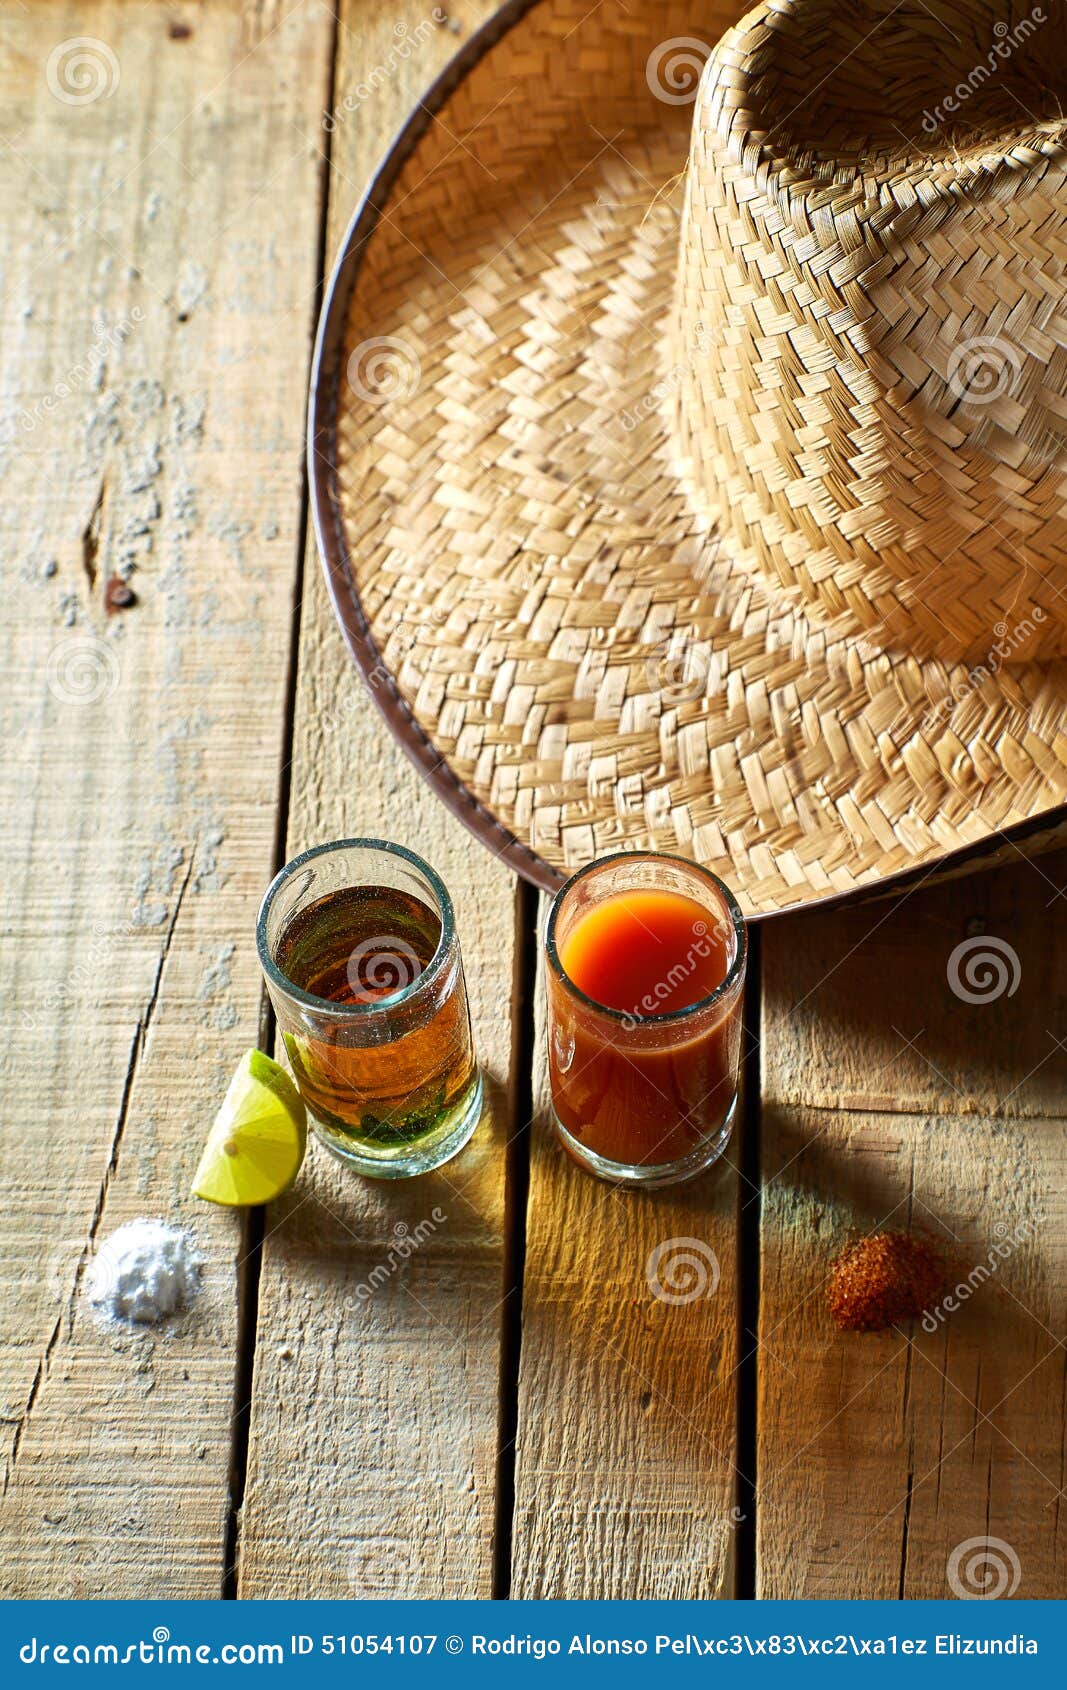 tequila, sangrita and lemon